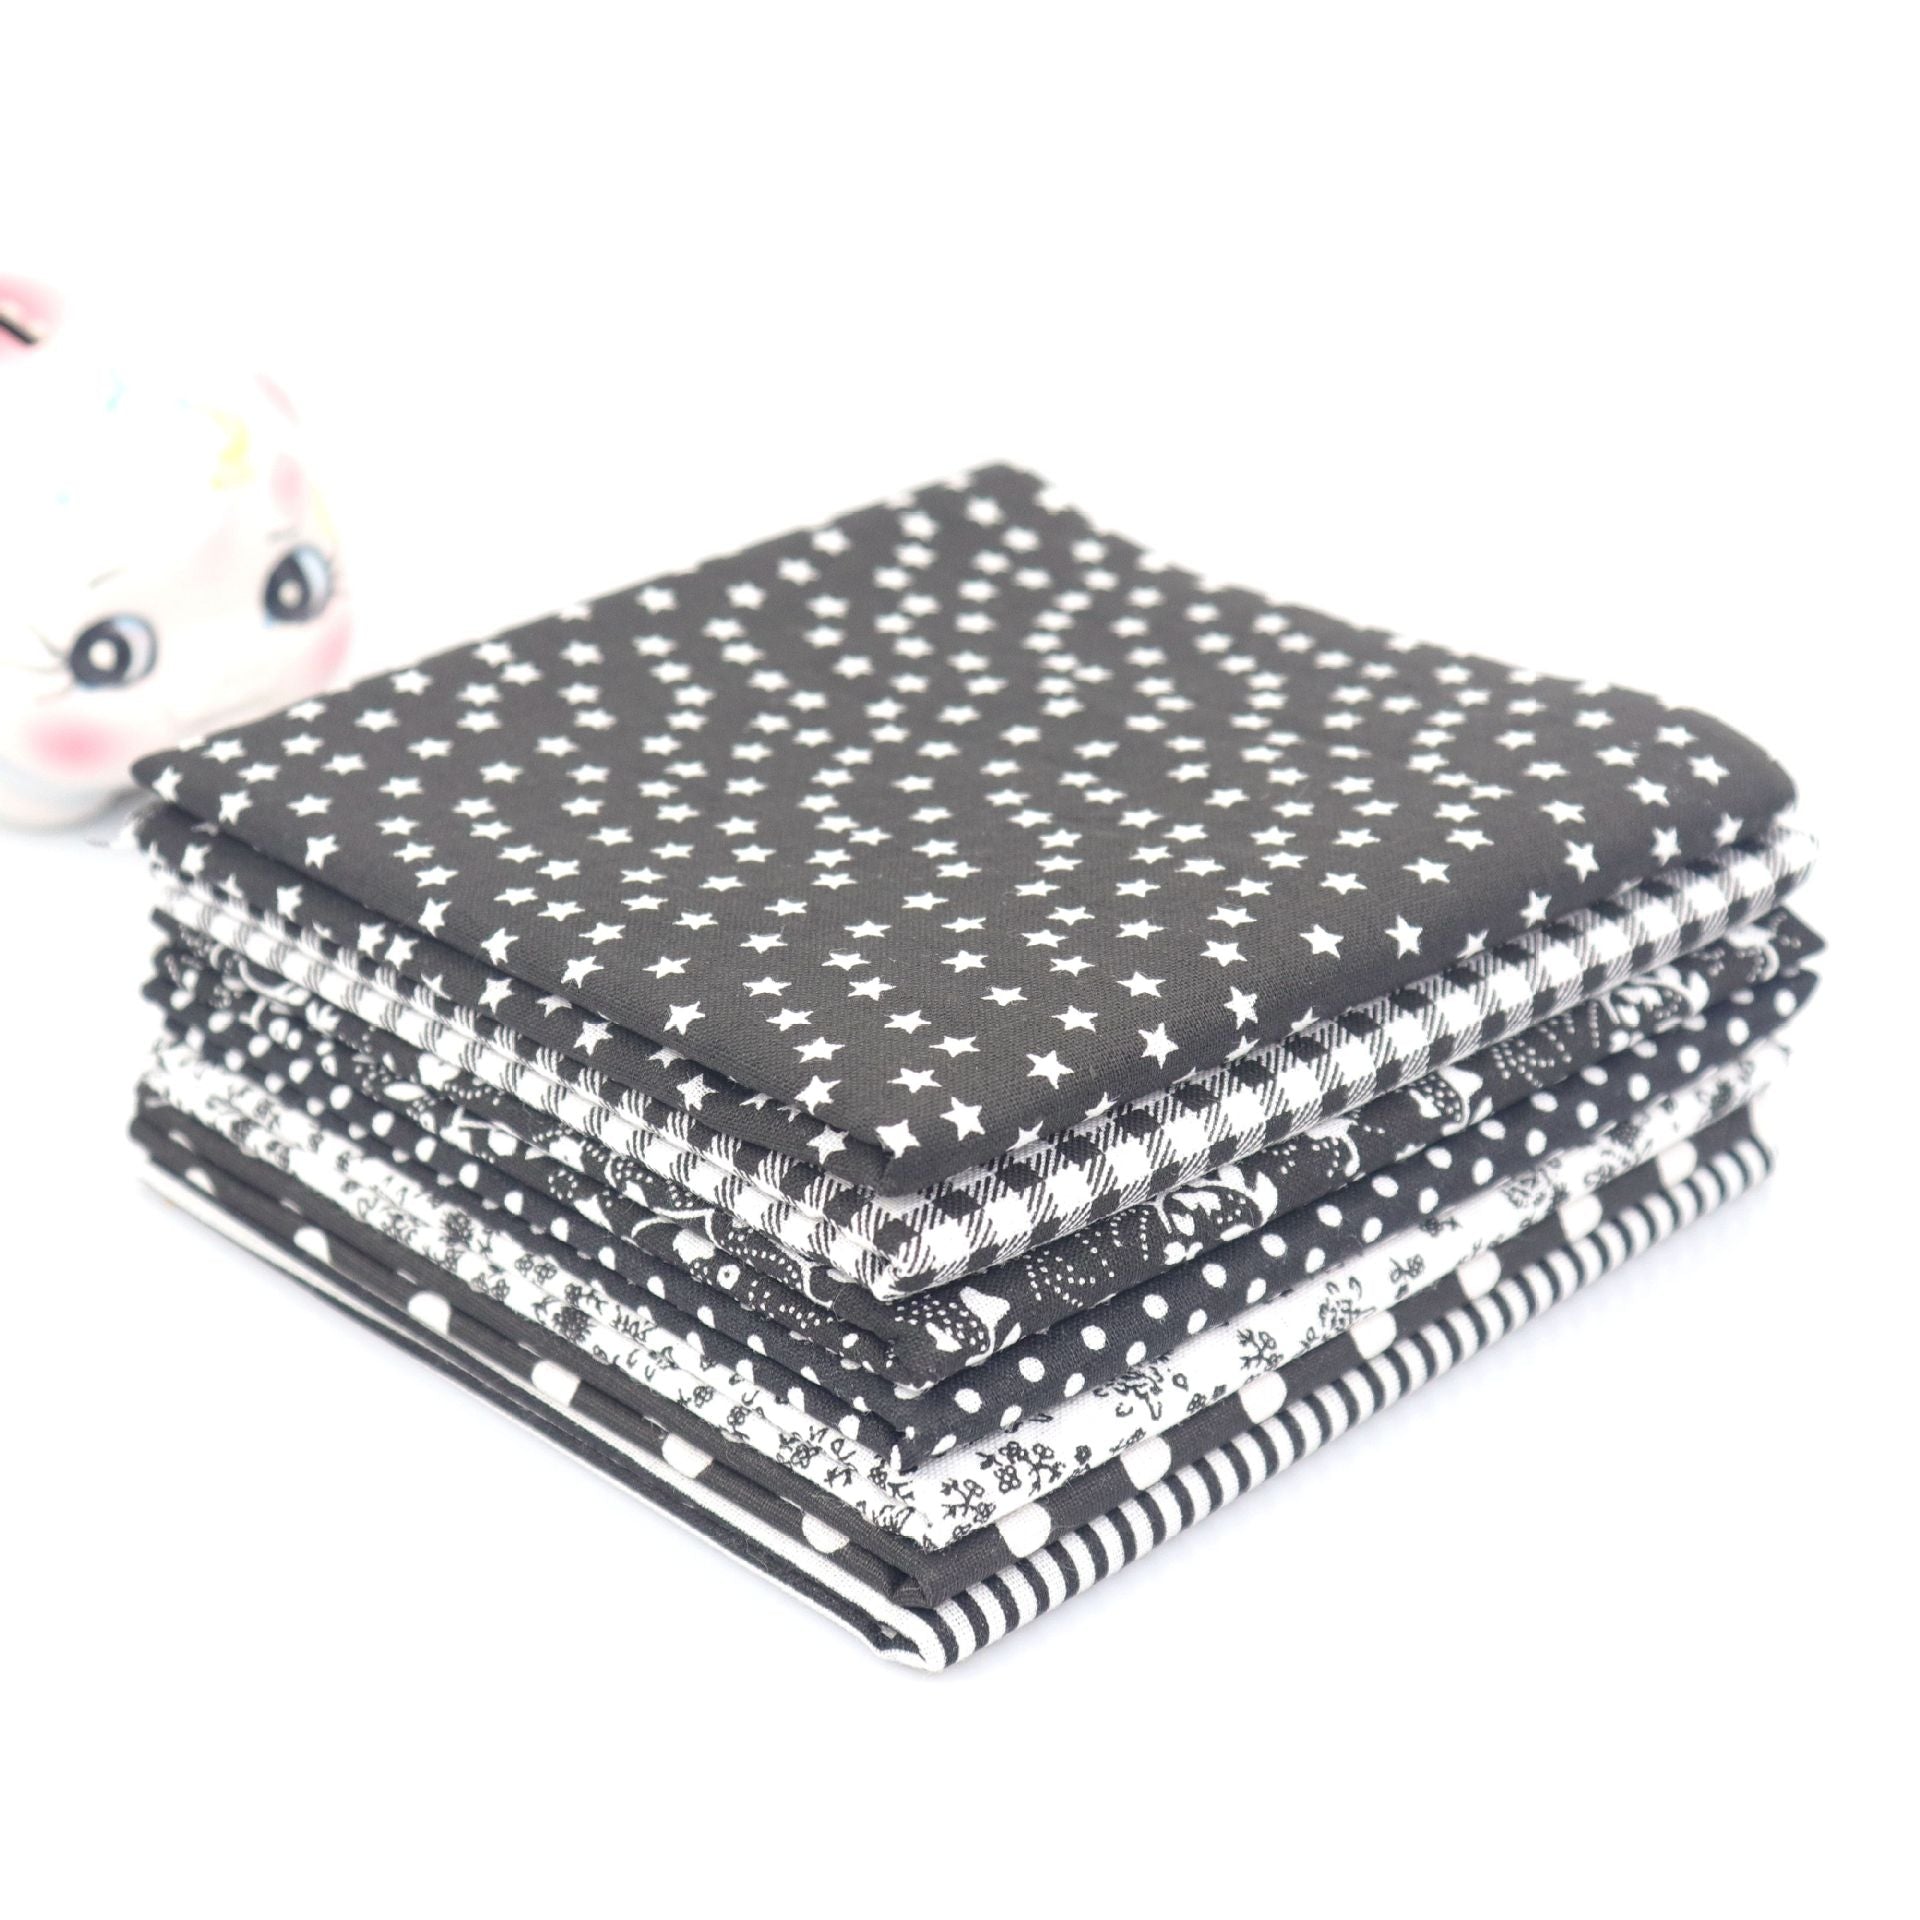 MajorCrafts 7pcs of 50cm x 50cm Mixed Black Theme Cotton Fabric Patchwork Squares